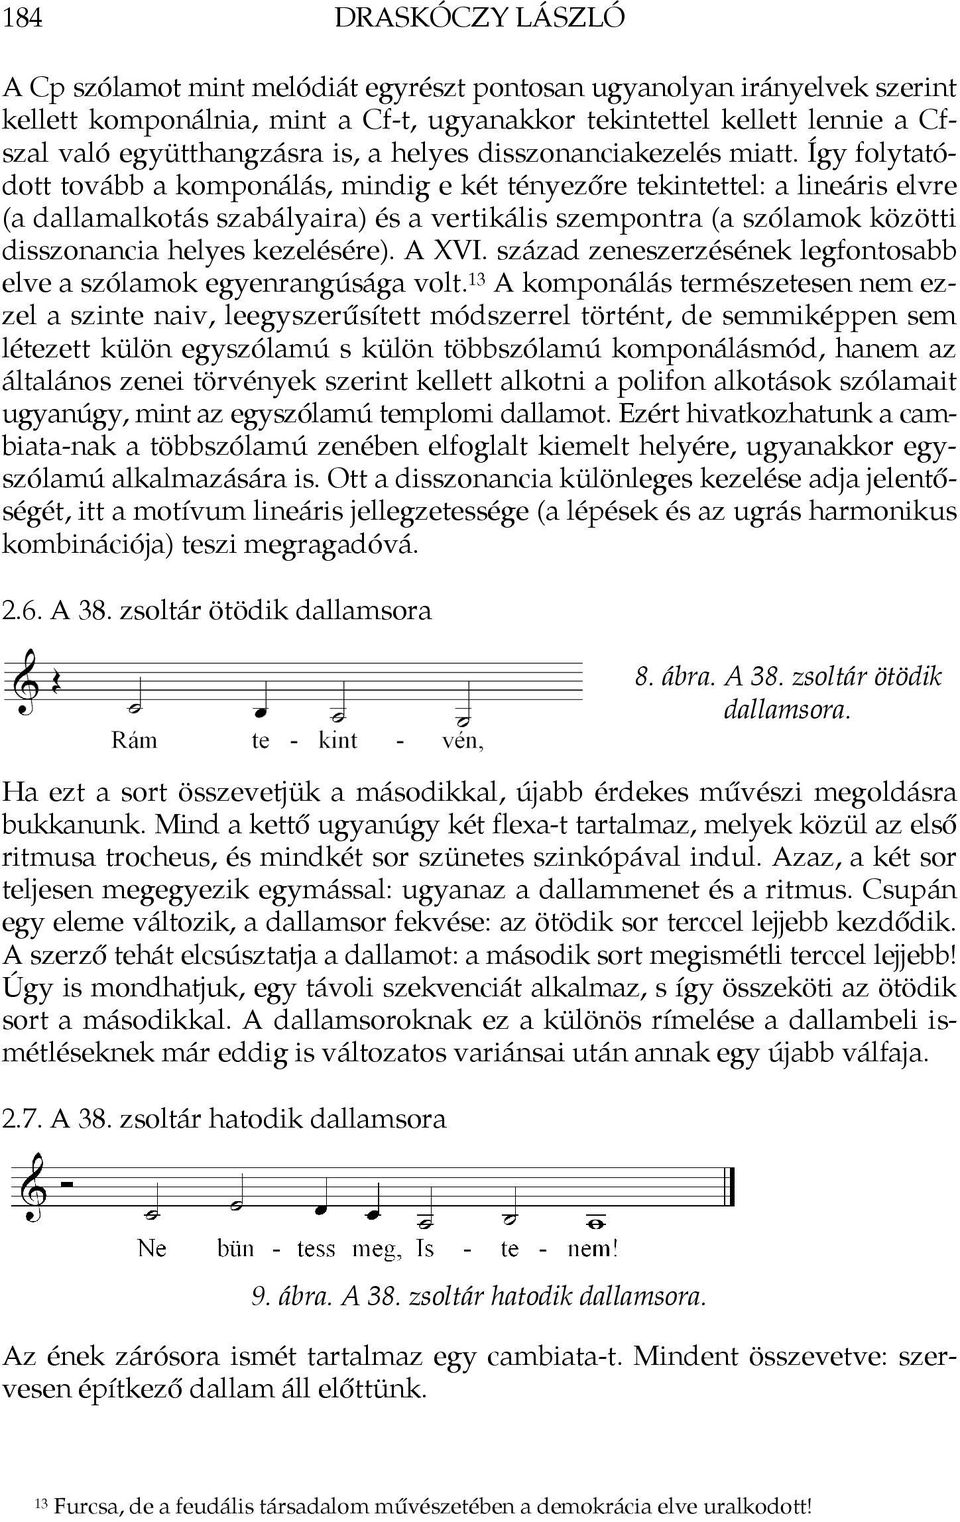 Így folytatódott tovább a komponálás, mindig e két tényezőre tekintettel: a lineáris elvre (a dallamalkotás szabályaira) és a vertikális szempontra (a szólamok közötti disszonancia helyes kezelésére).